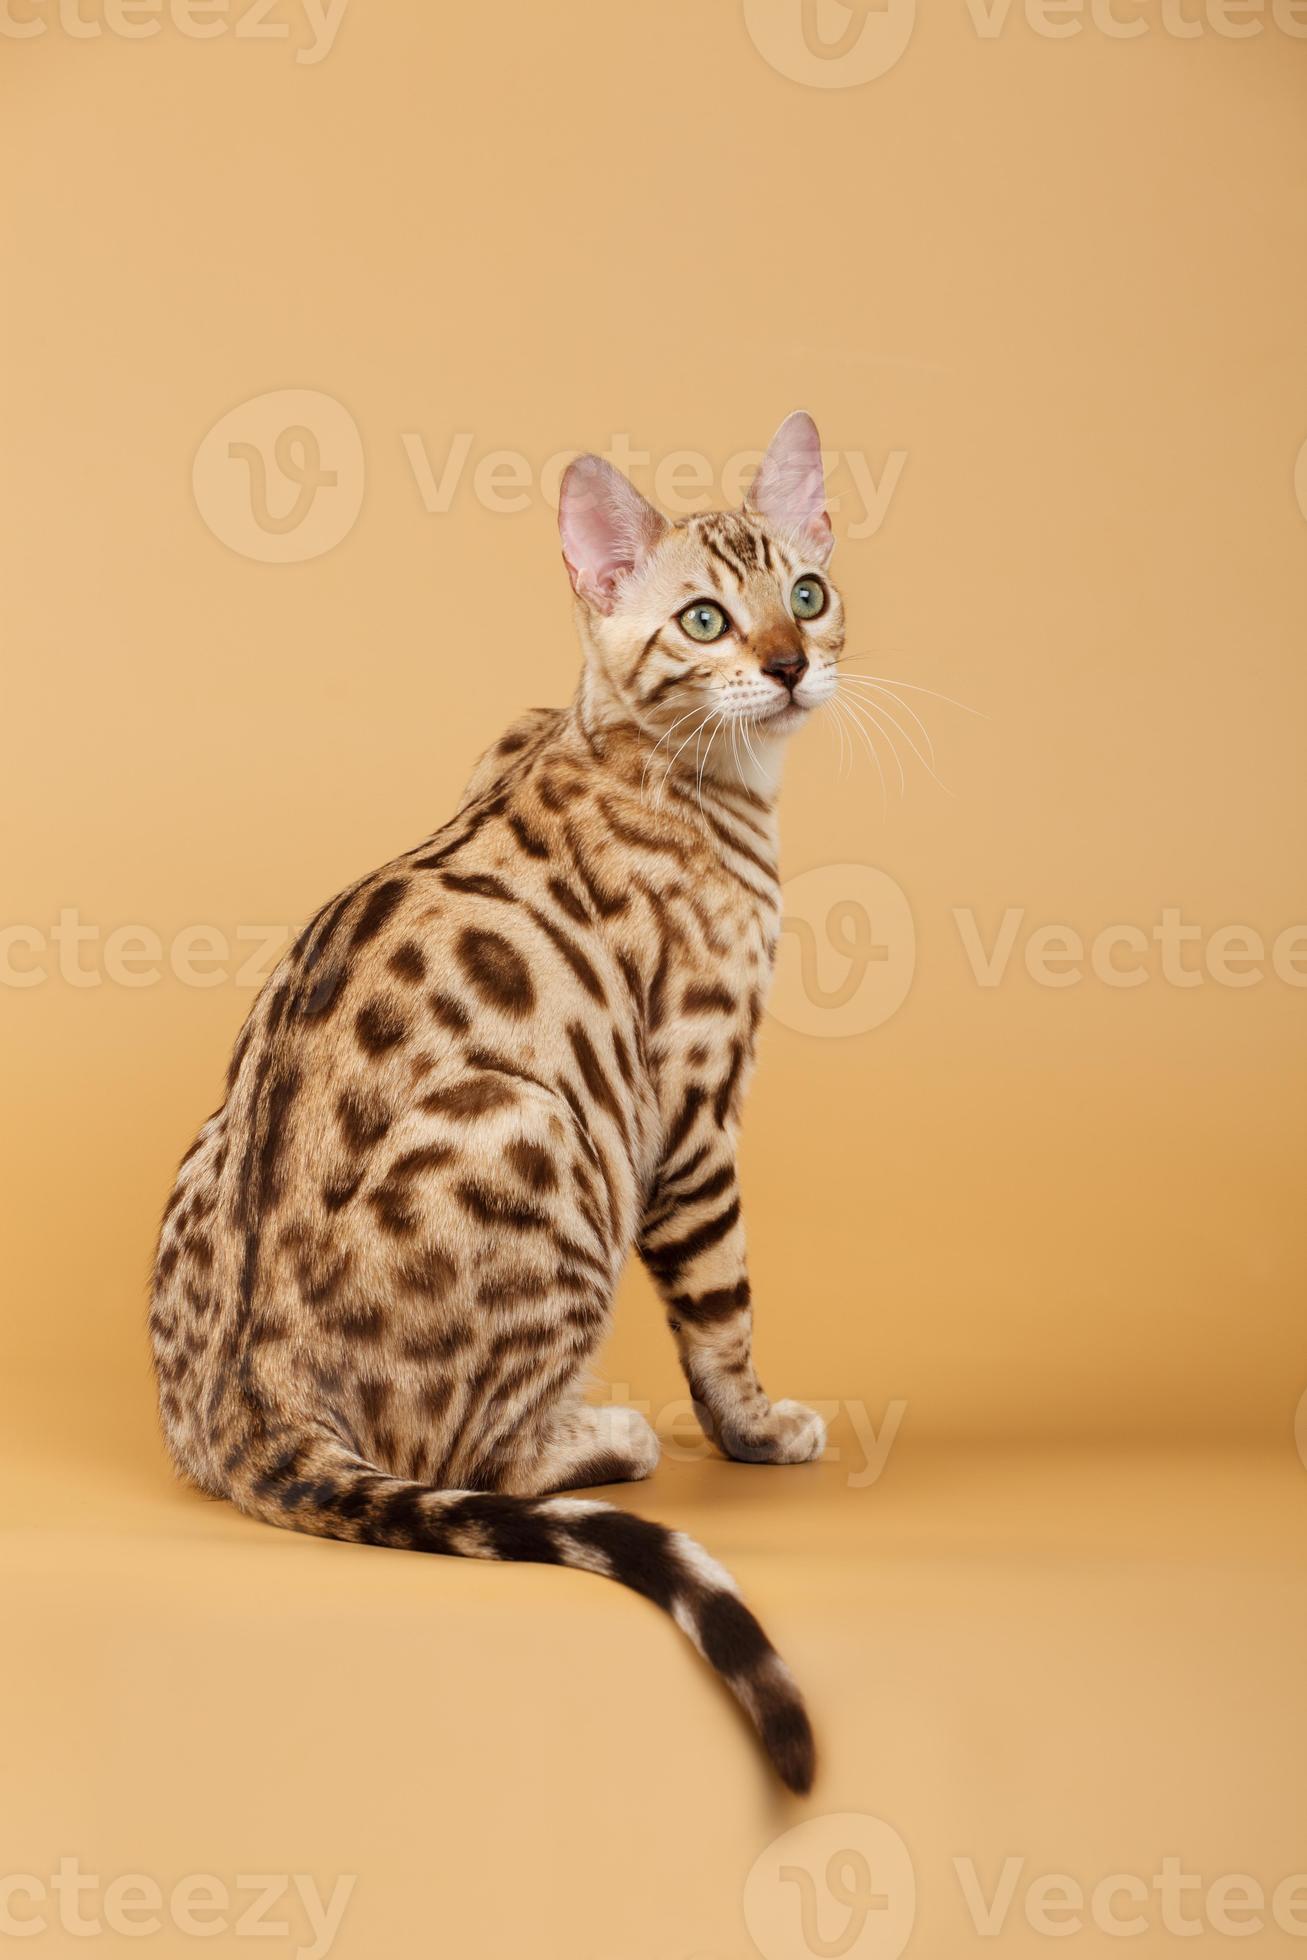 Bengal Cat 715431 Stock Photo At Vecteezy